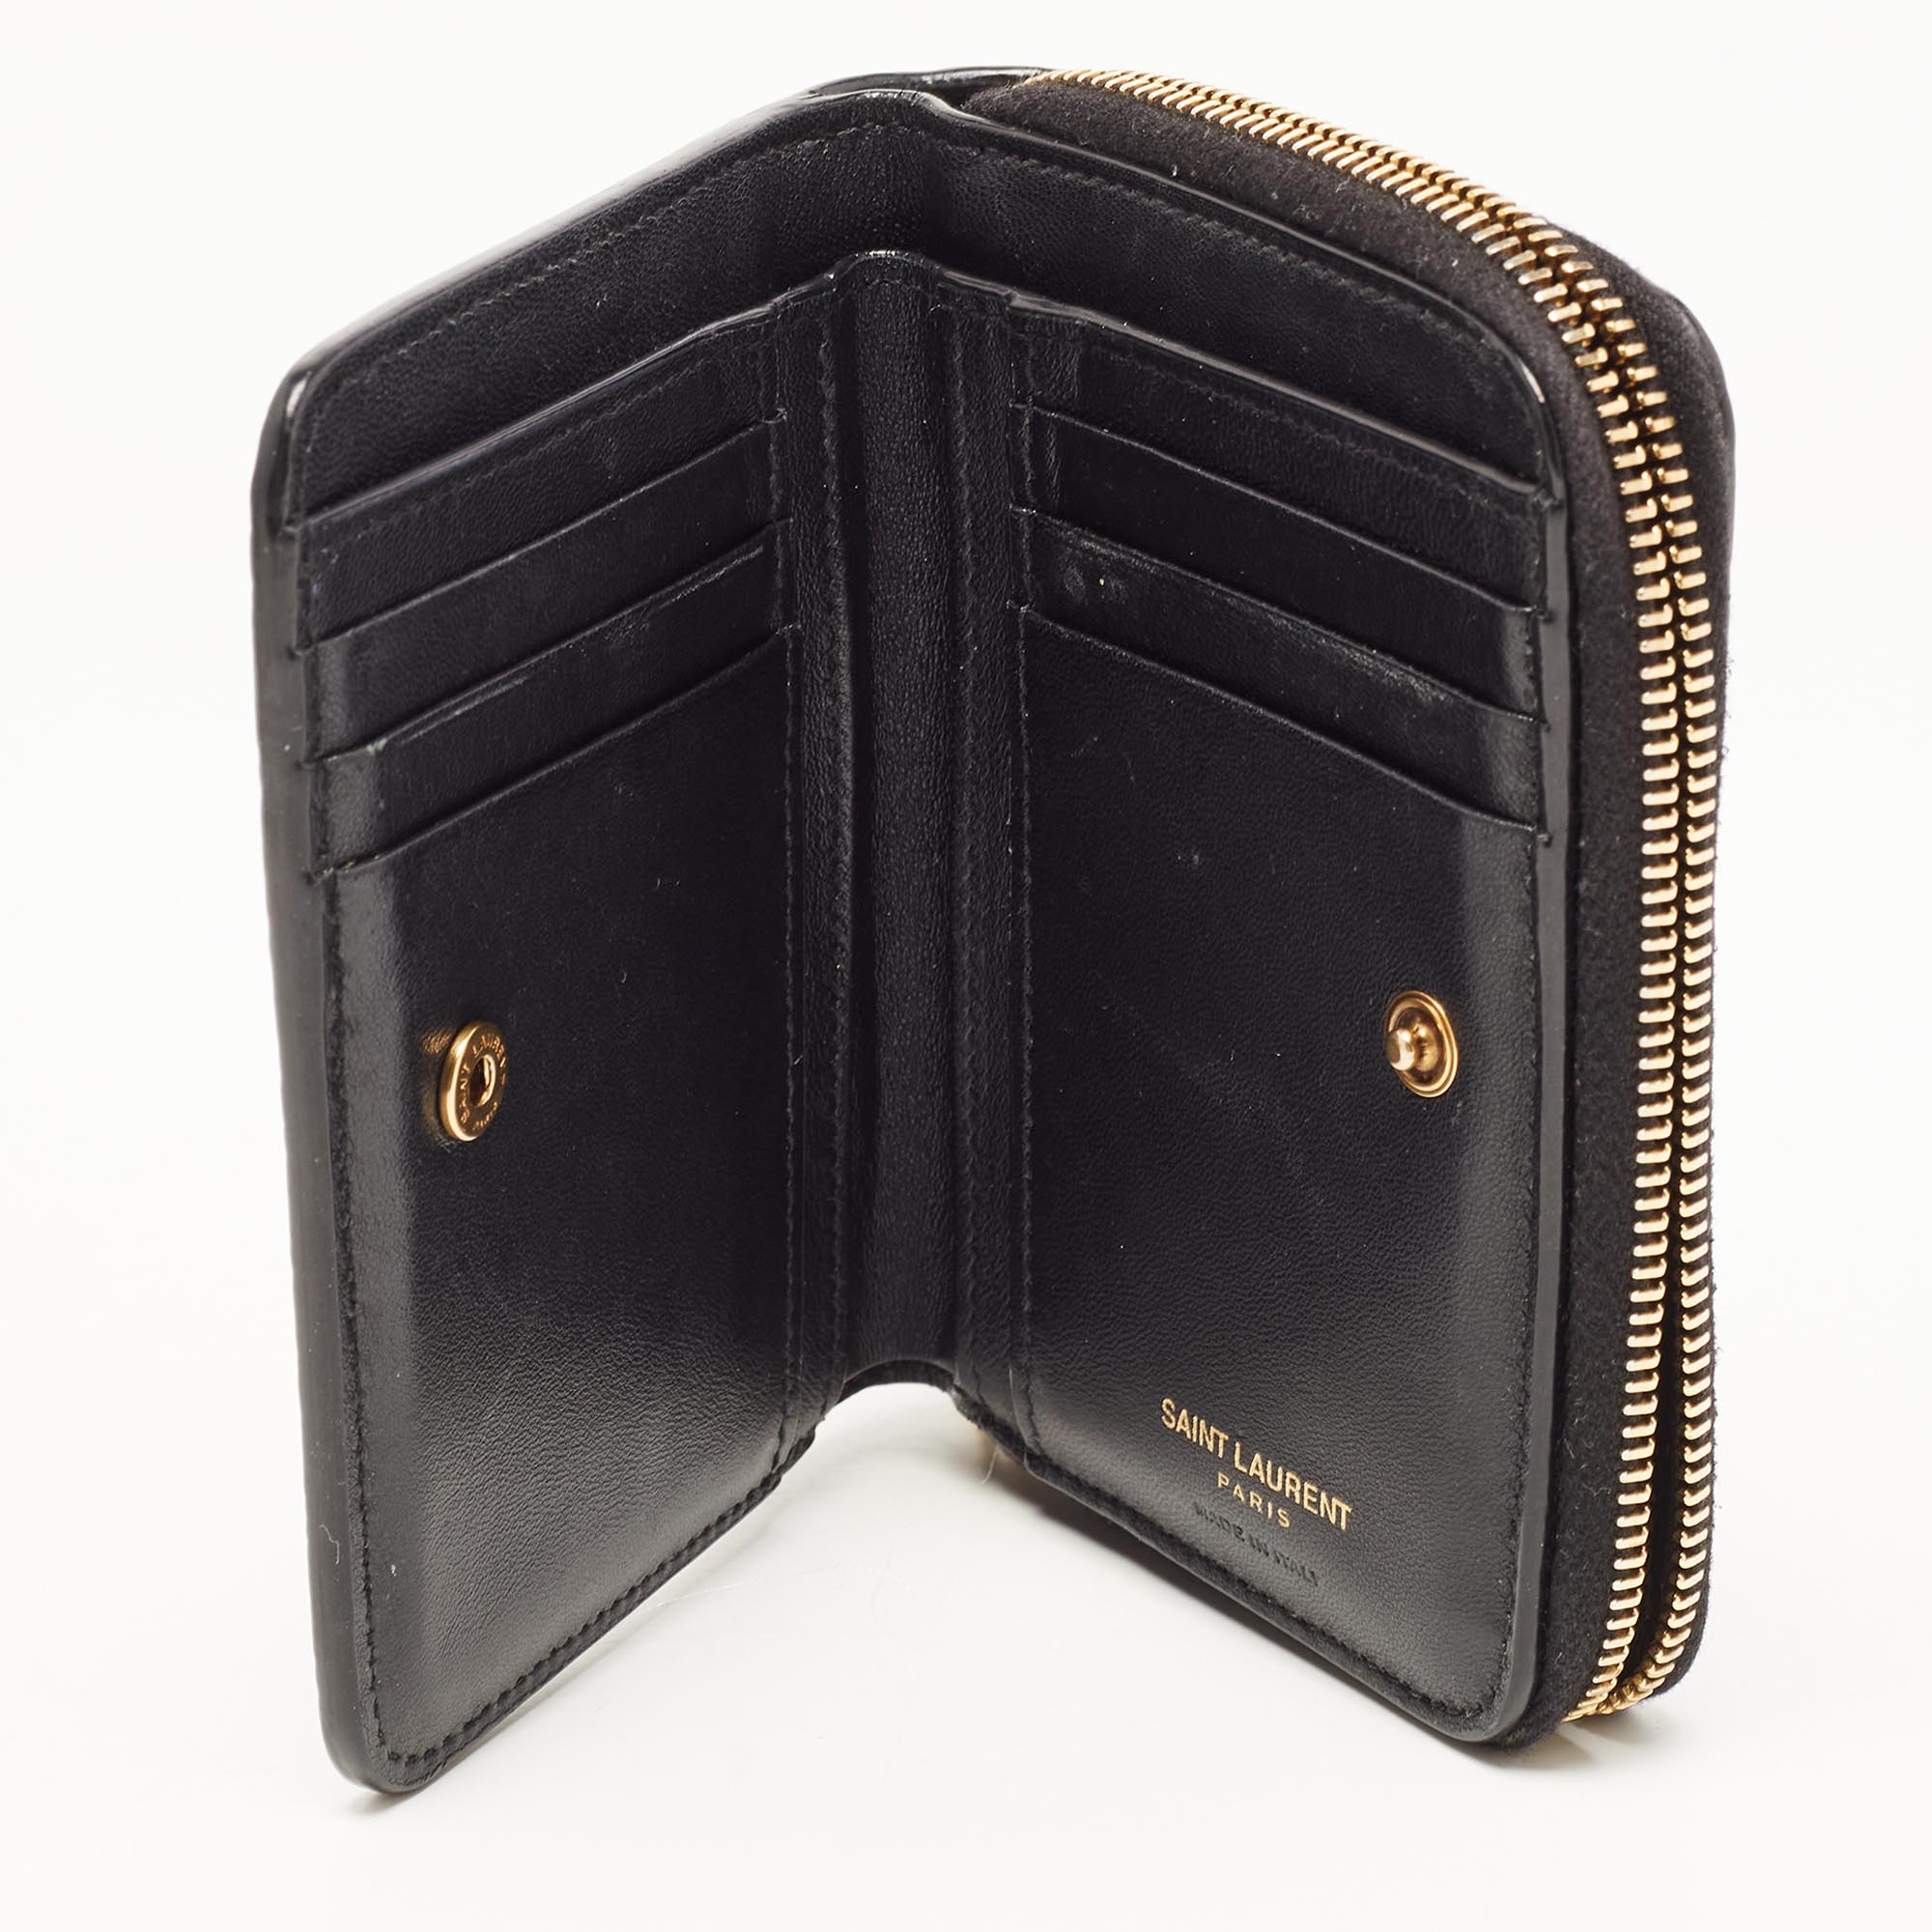 

Saint Laurent Black Croc-Embossed Leather Zip Around Compact Wallet